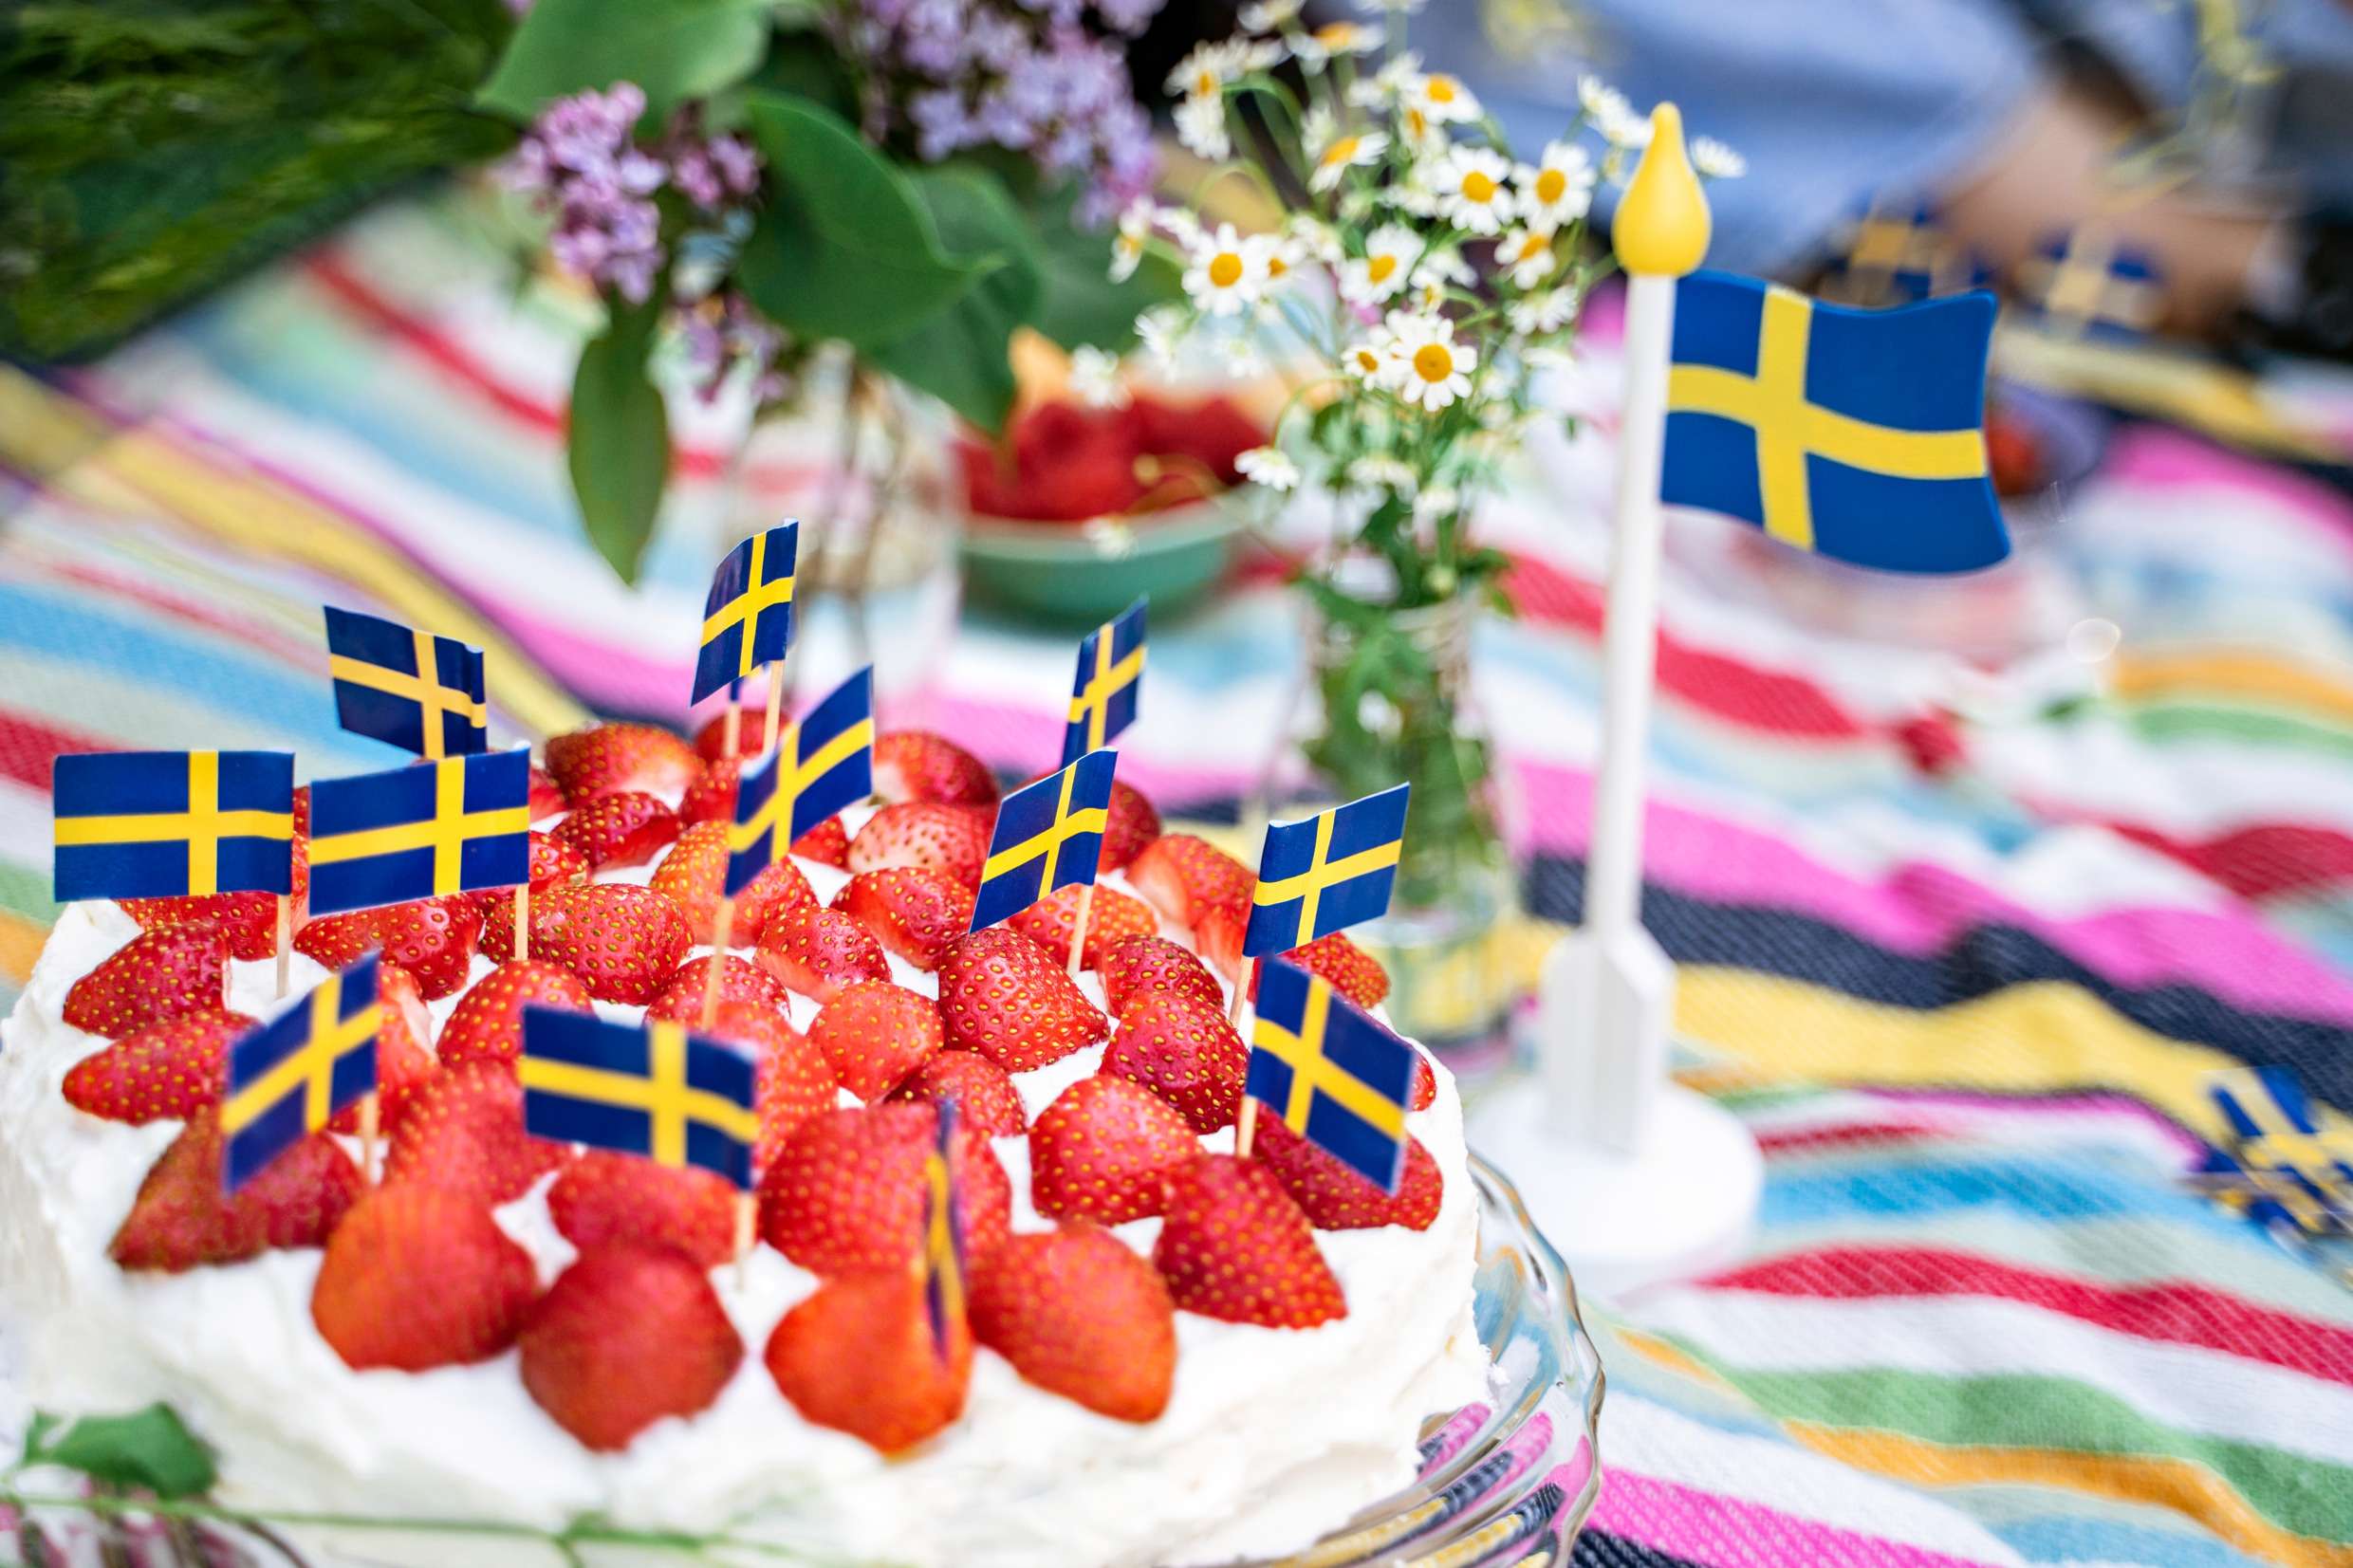 En jordgubbstårta på ett sommardukat bord med en svensk flagga.